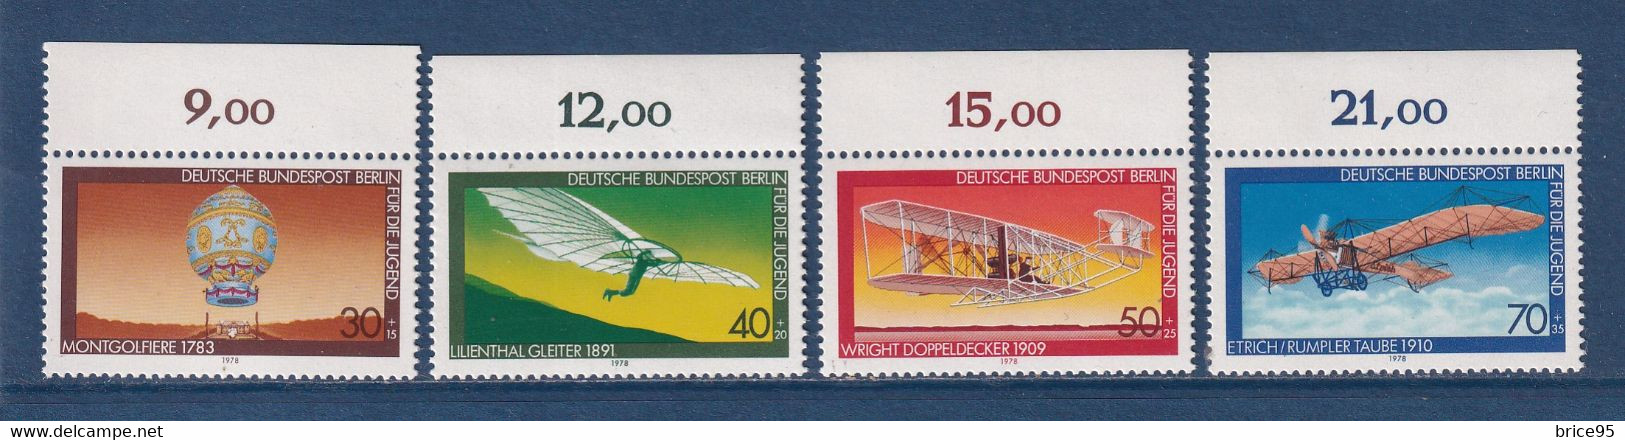 ⭐ Allemagne - YT N° 524 à 527 ** - Neuf Sans Charnière - Thématique Avion - 1978 ⭐ - Neufs